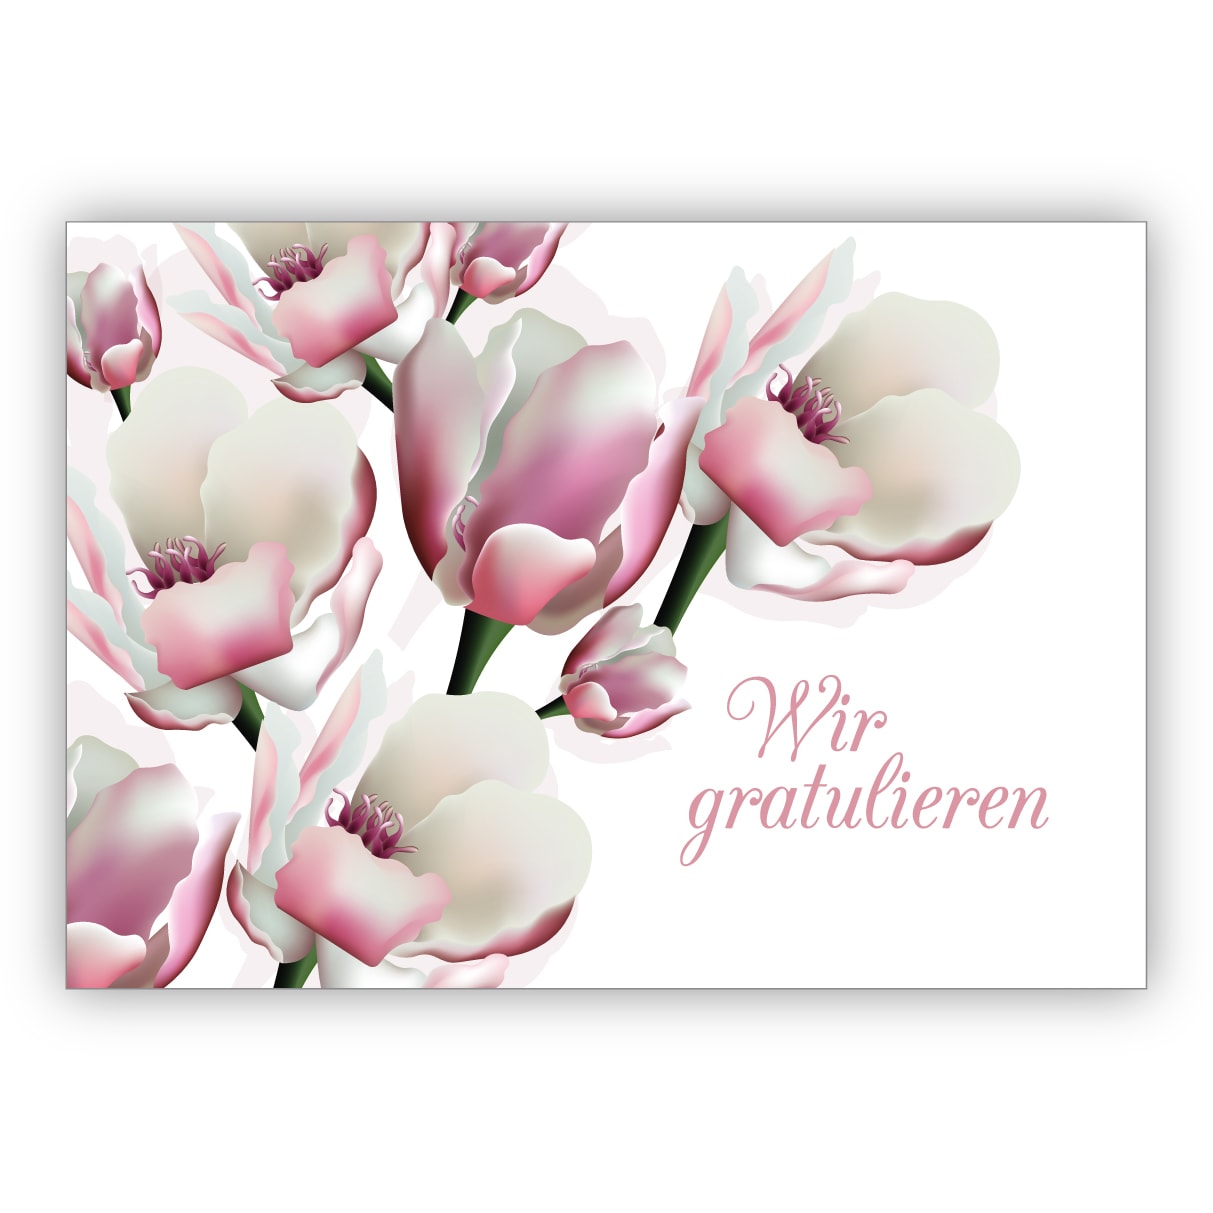 Elegante Glückwunschkarte mit leichten Blüten zur Hochzeit, Taufe, Geburt, Examen etc: Wir gratulieren